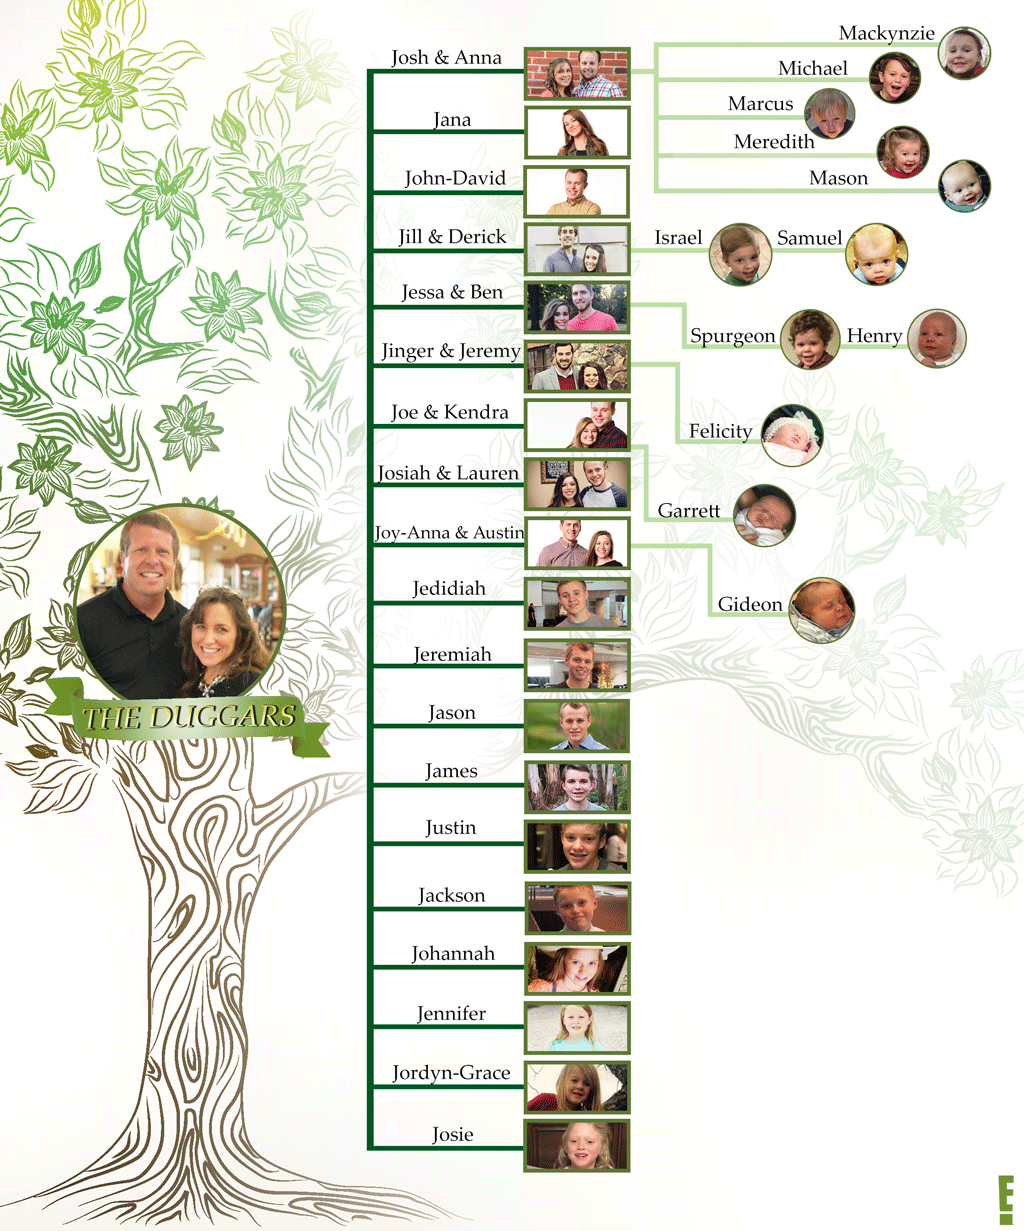 Updated Duggars Family Tree